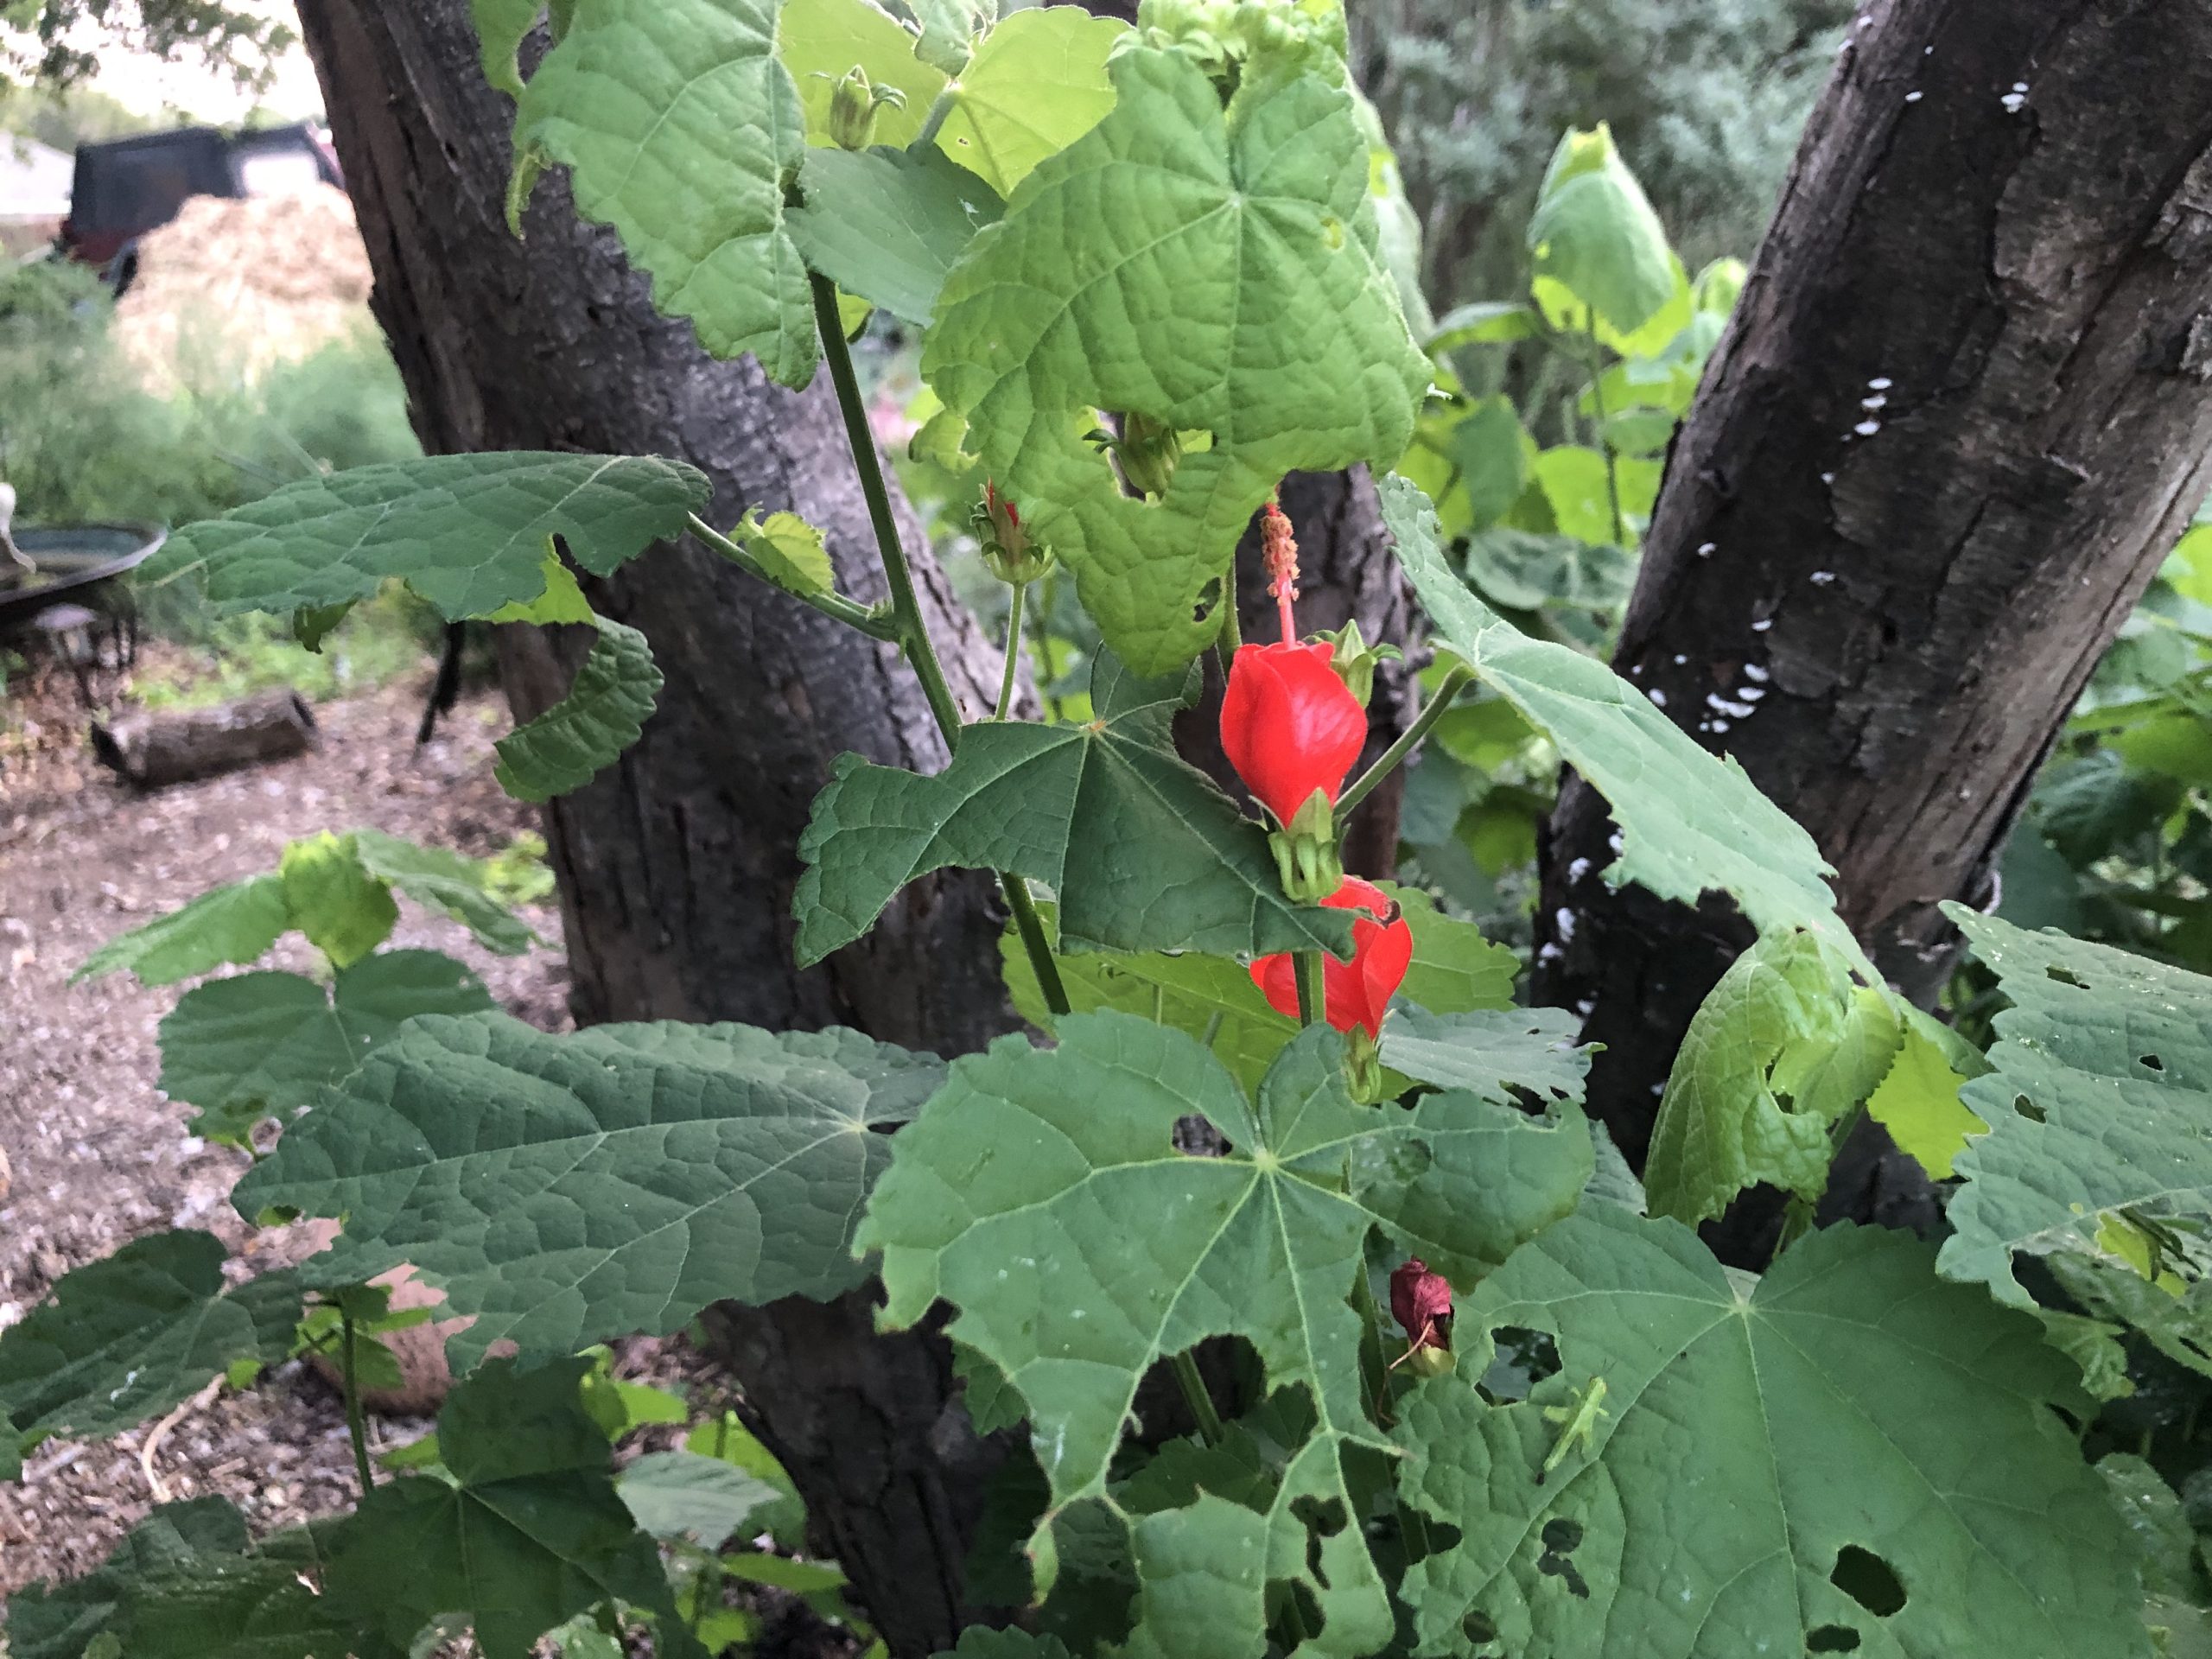 Native Texas plant Turk's Cap or Malvaviscus arboreus.